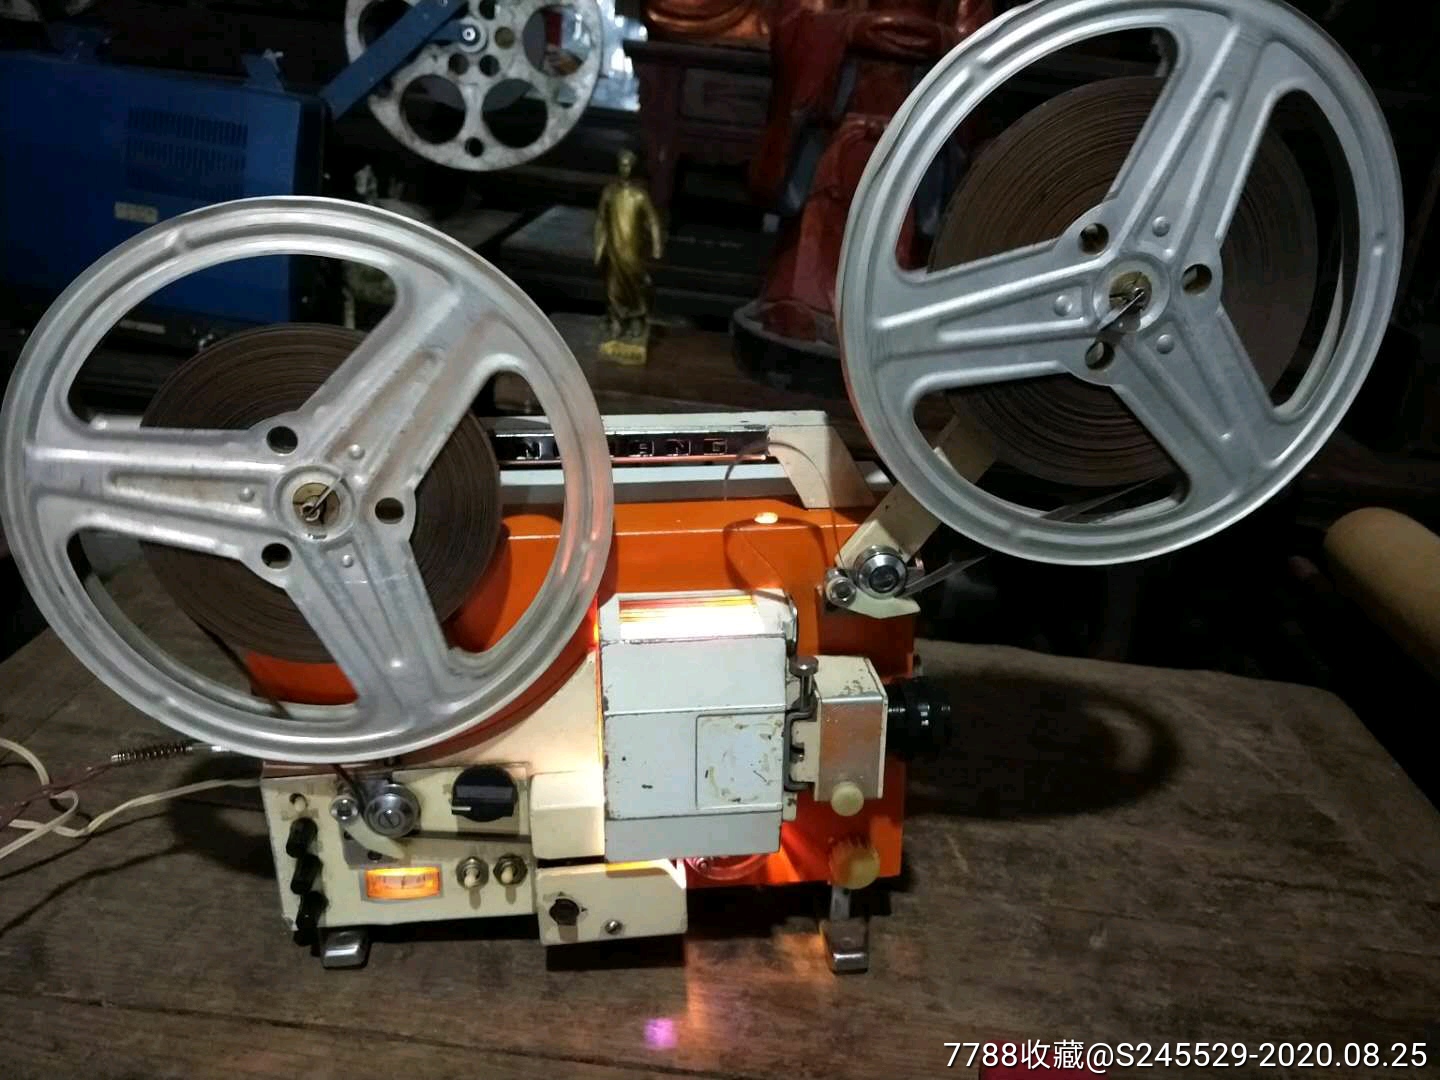 75毫米电影机一部,保存完整全是原厂配件,能正常放映,品象如图